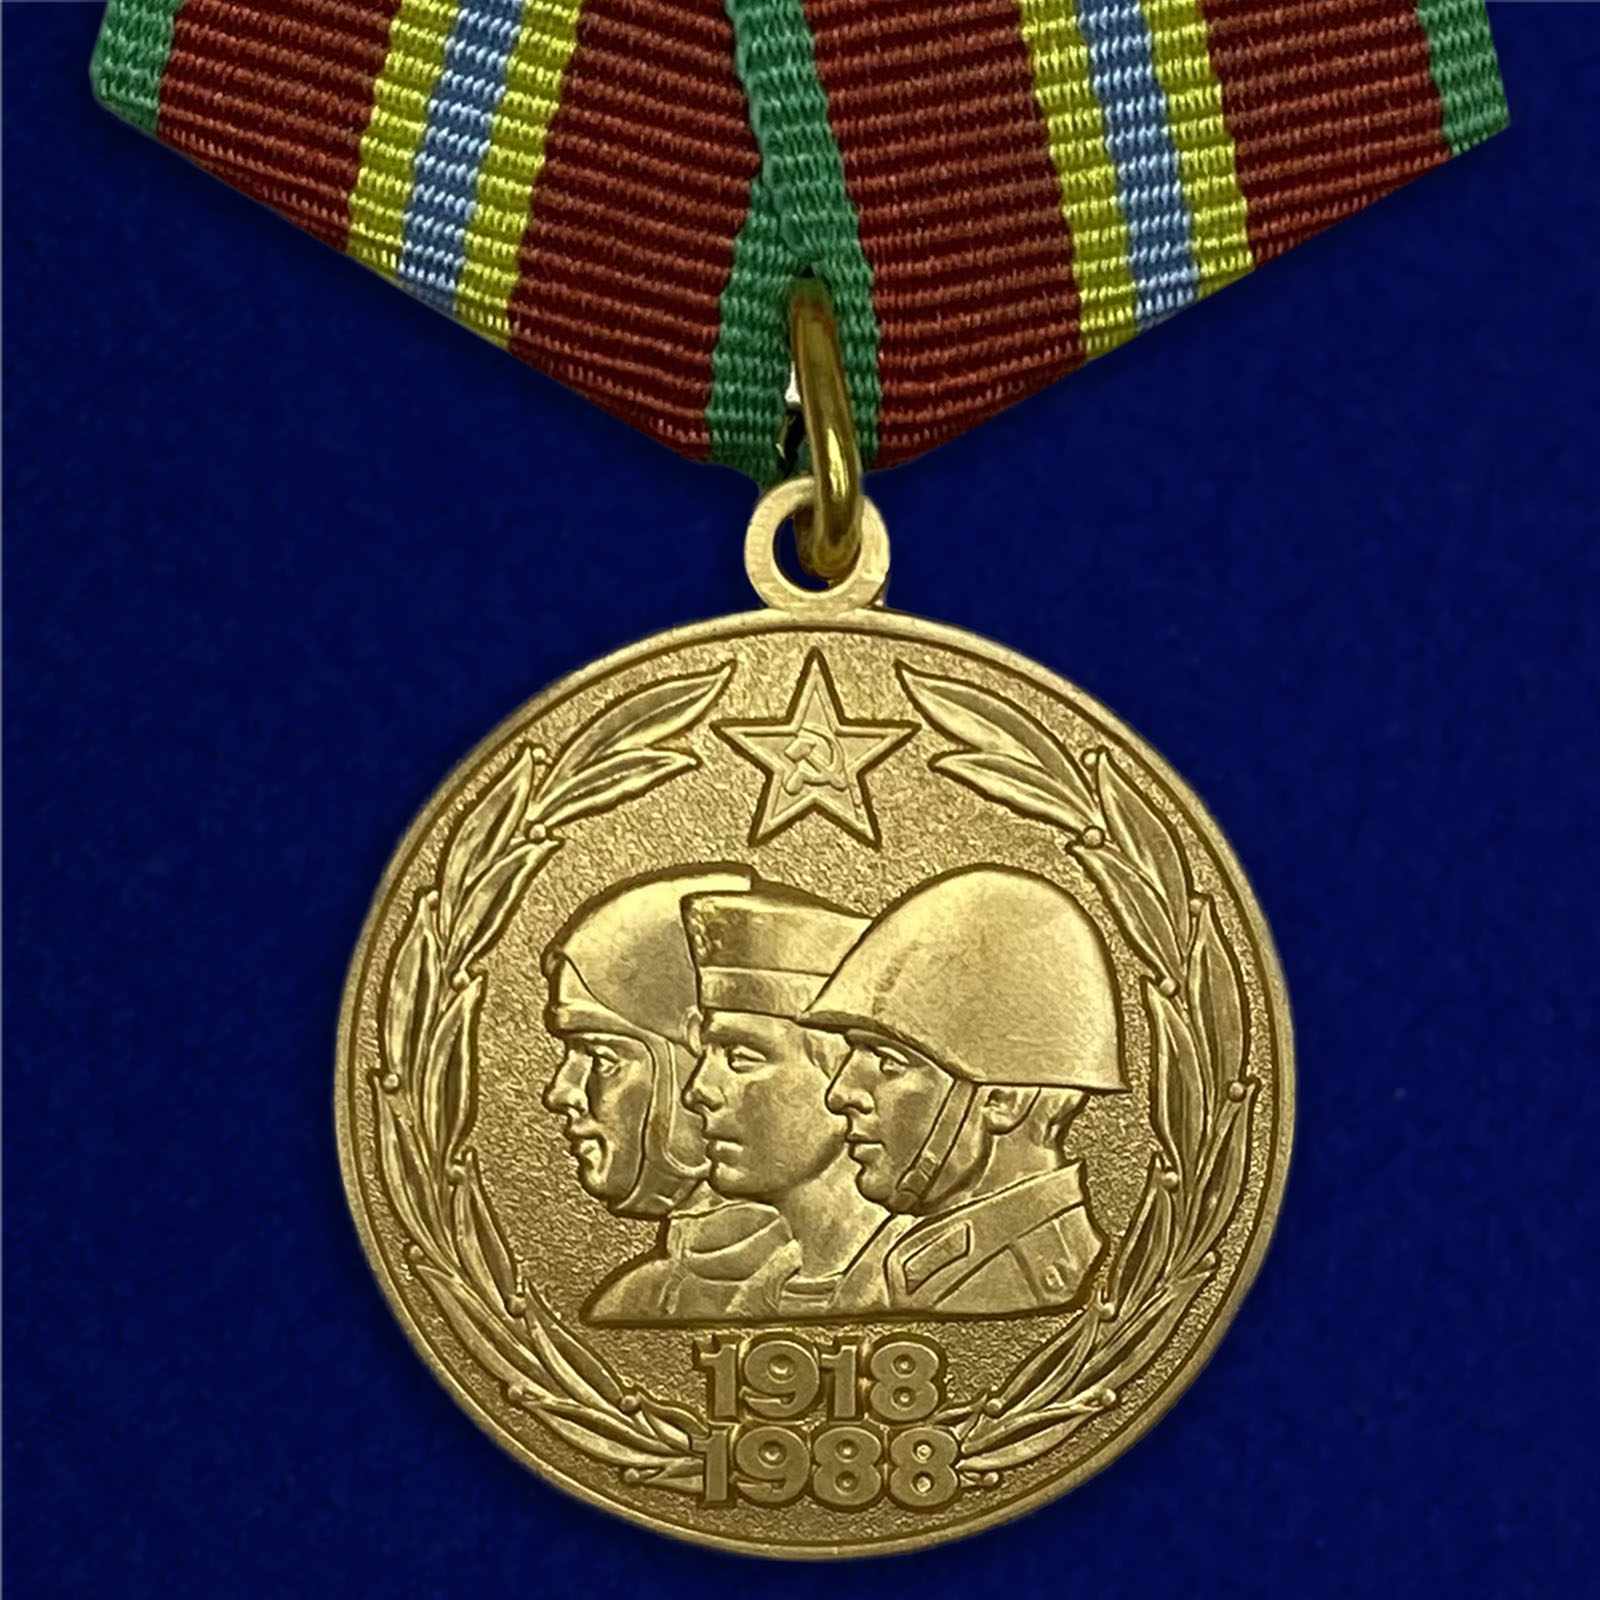 Медаль "70 лет Вооруженных Сил СССР"